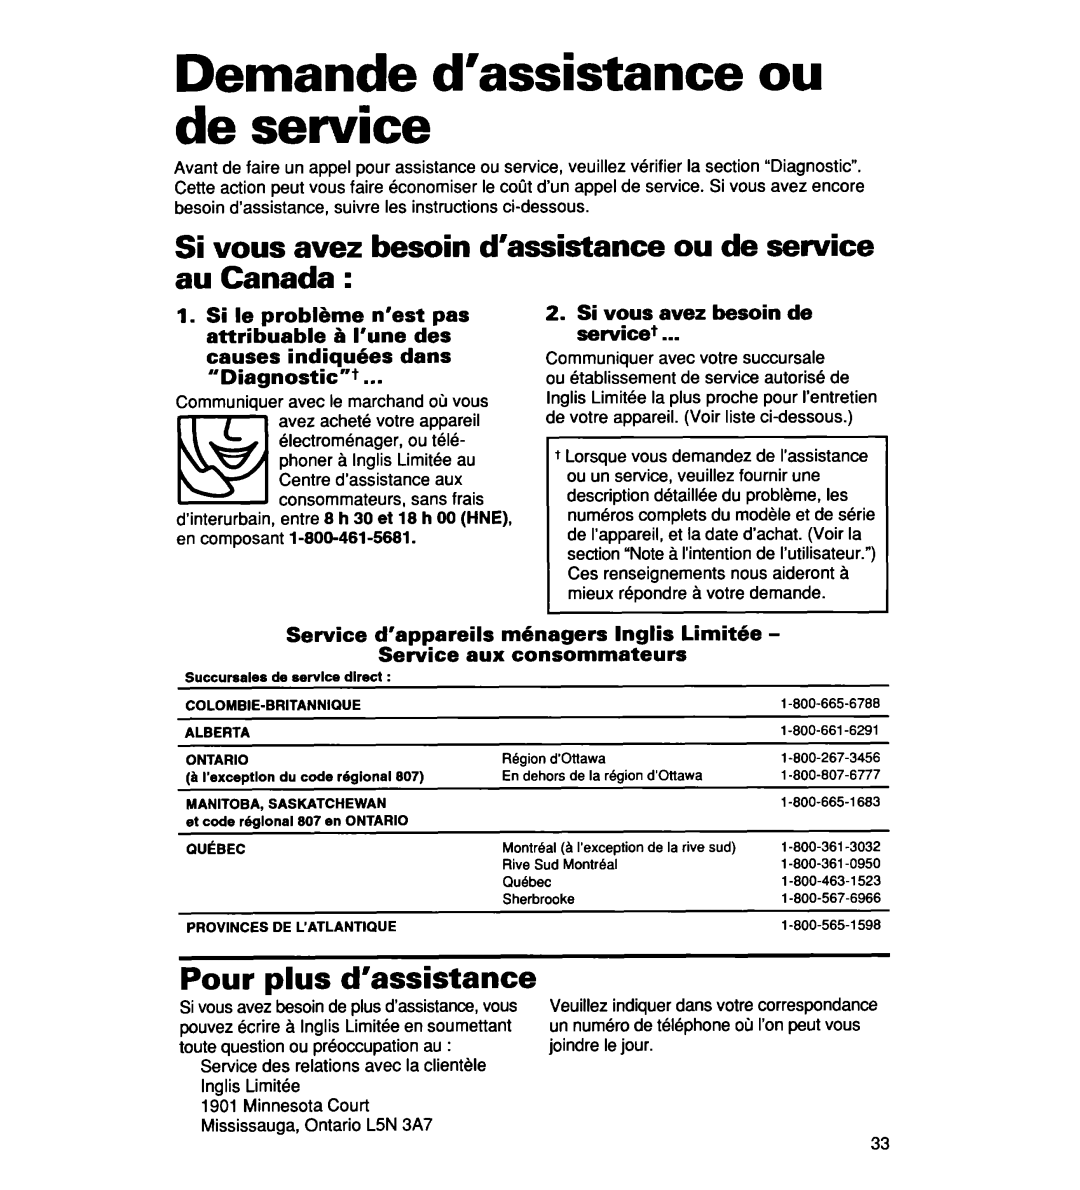 Whirlpool 935 Series Demande d’assistance ou de service, Pour plus d’assistance, causes indiquhes dans “Diagnostic”+ 